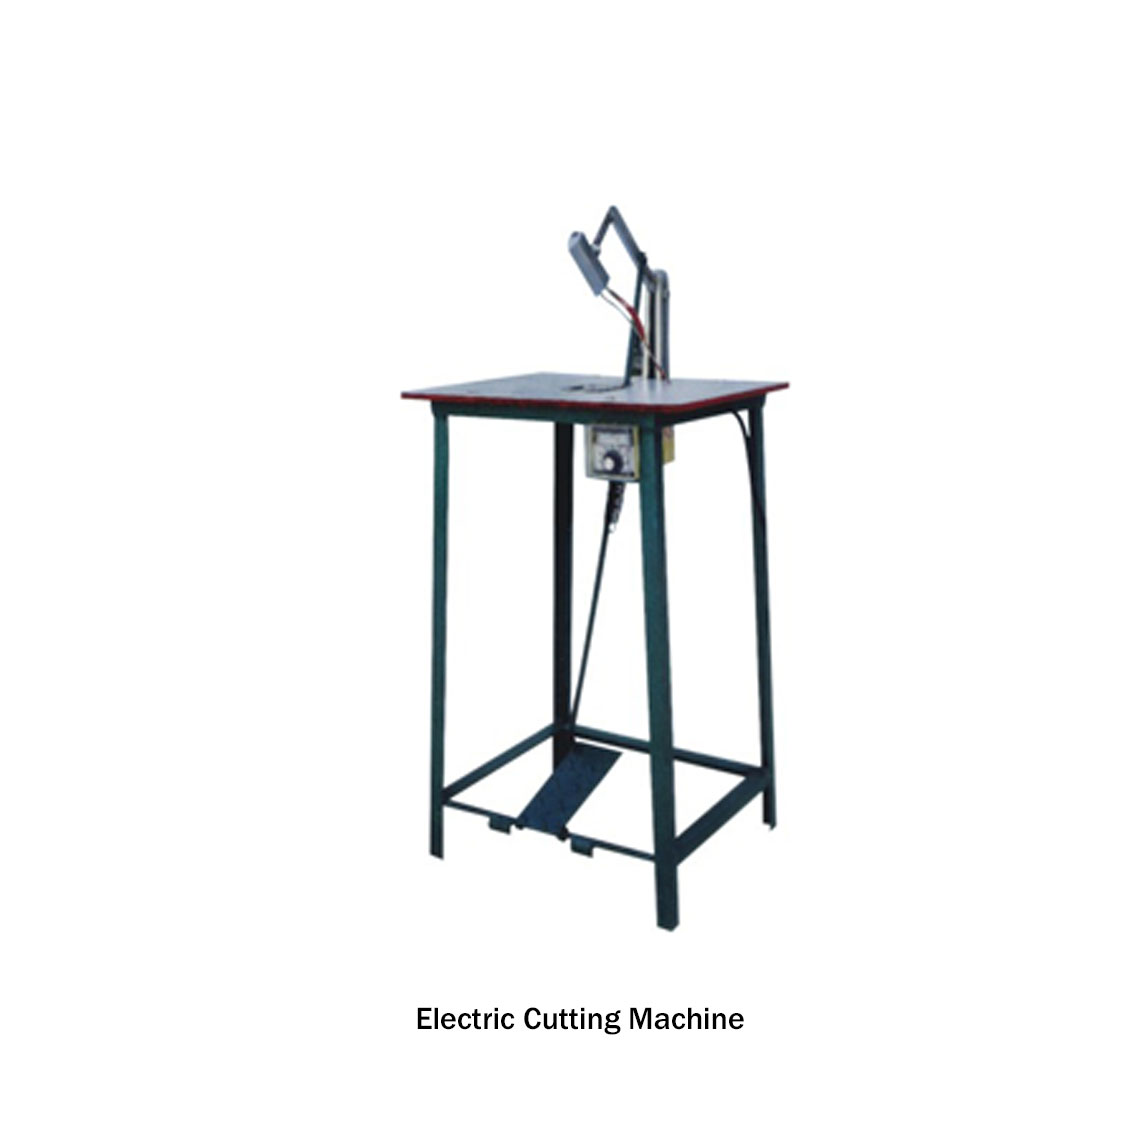 Electric Cutting Machine